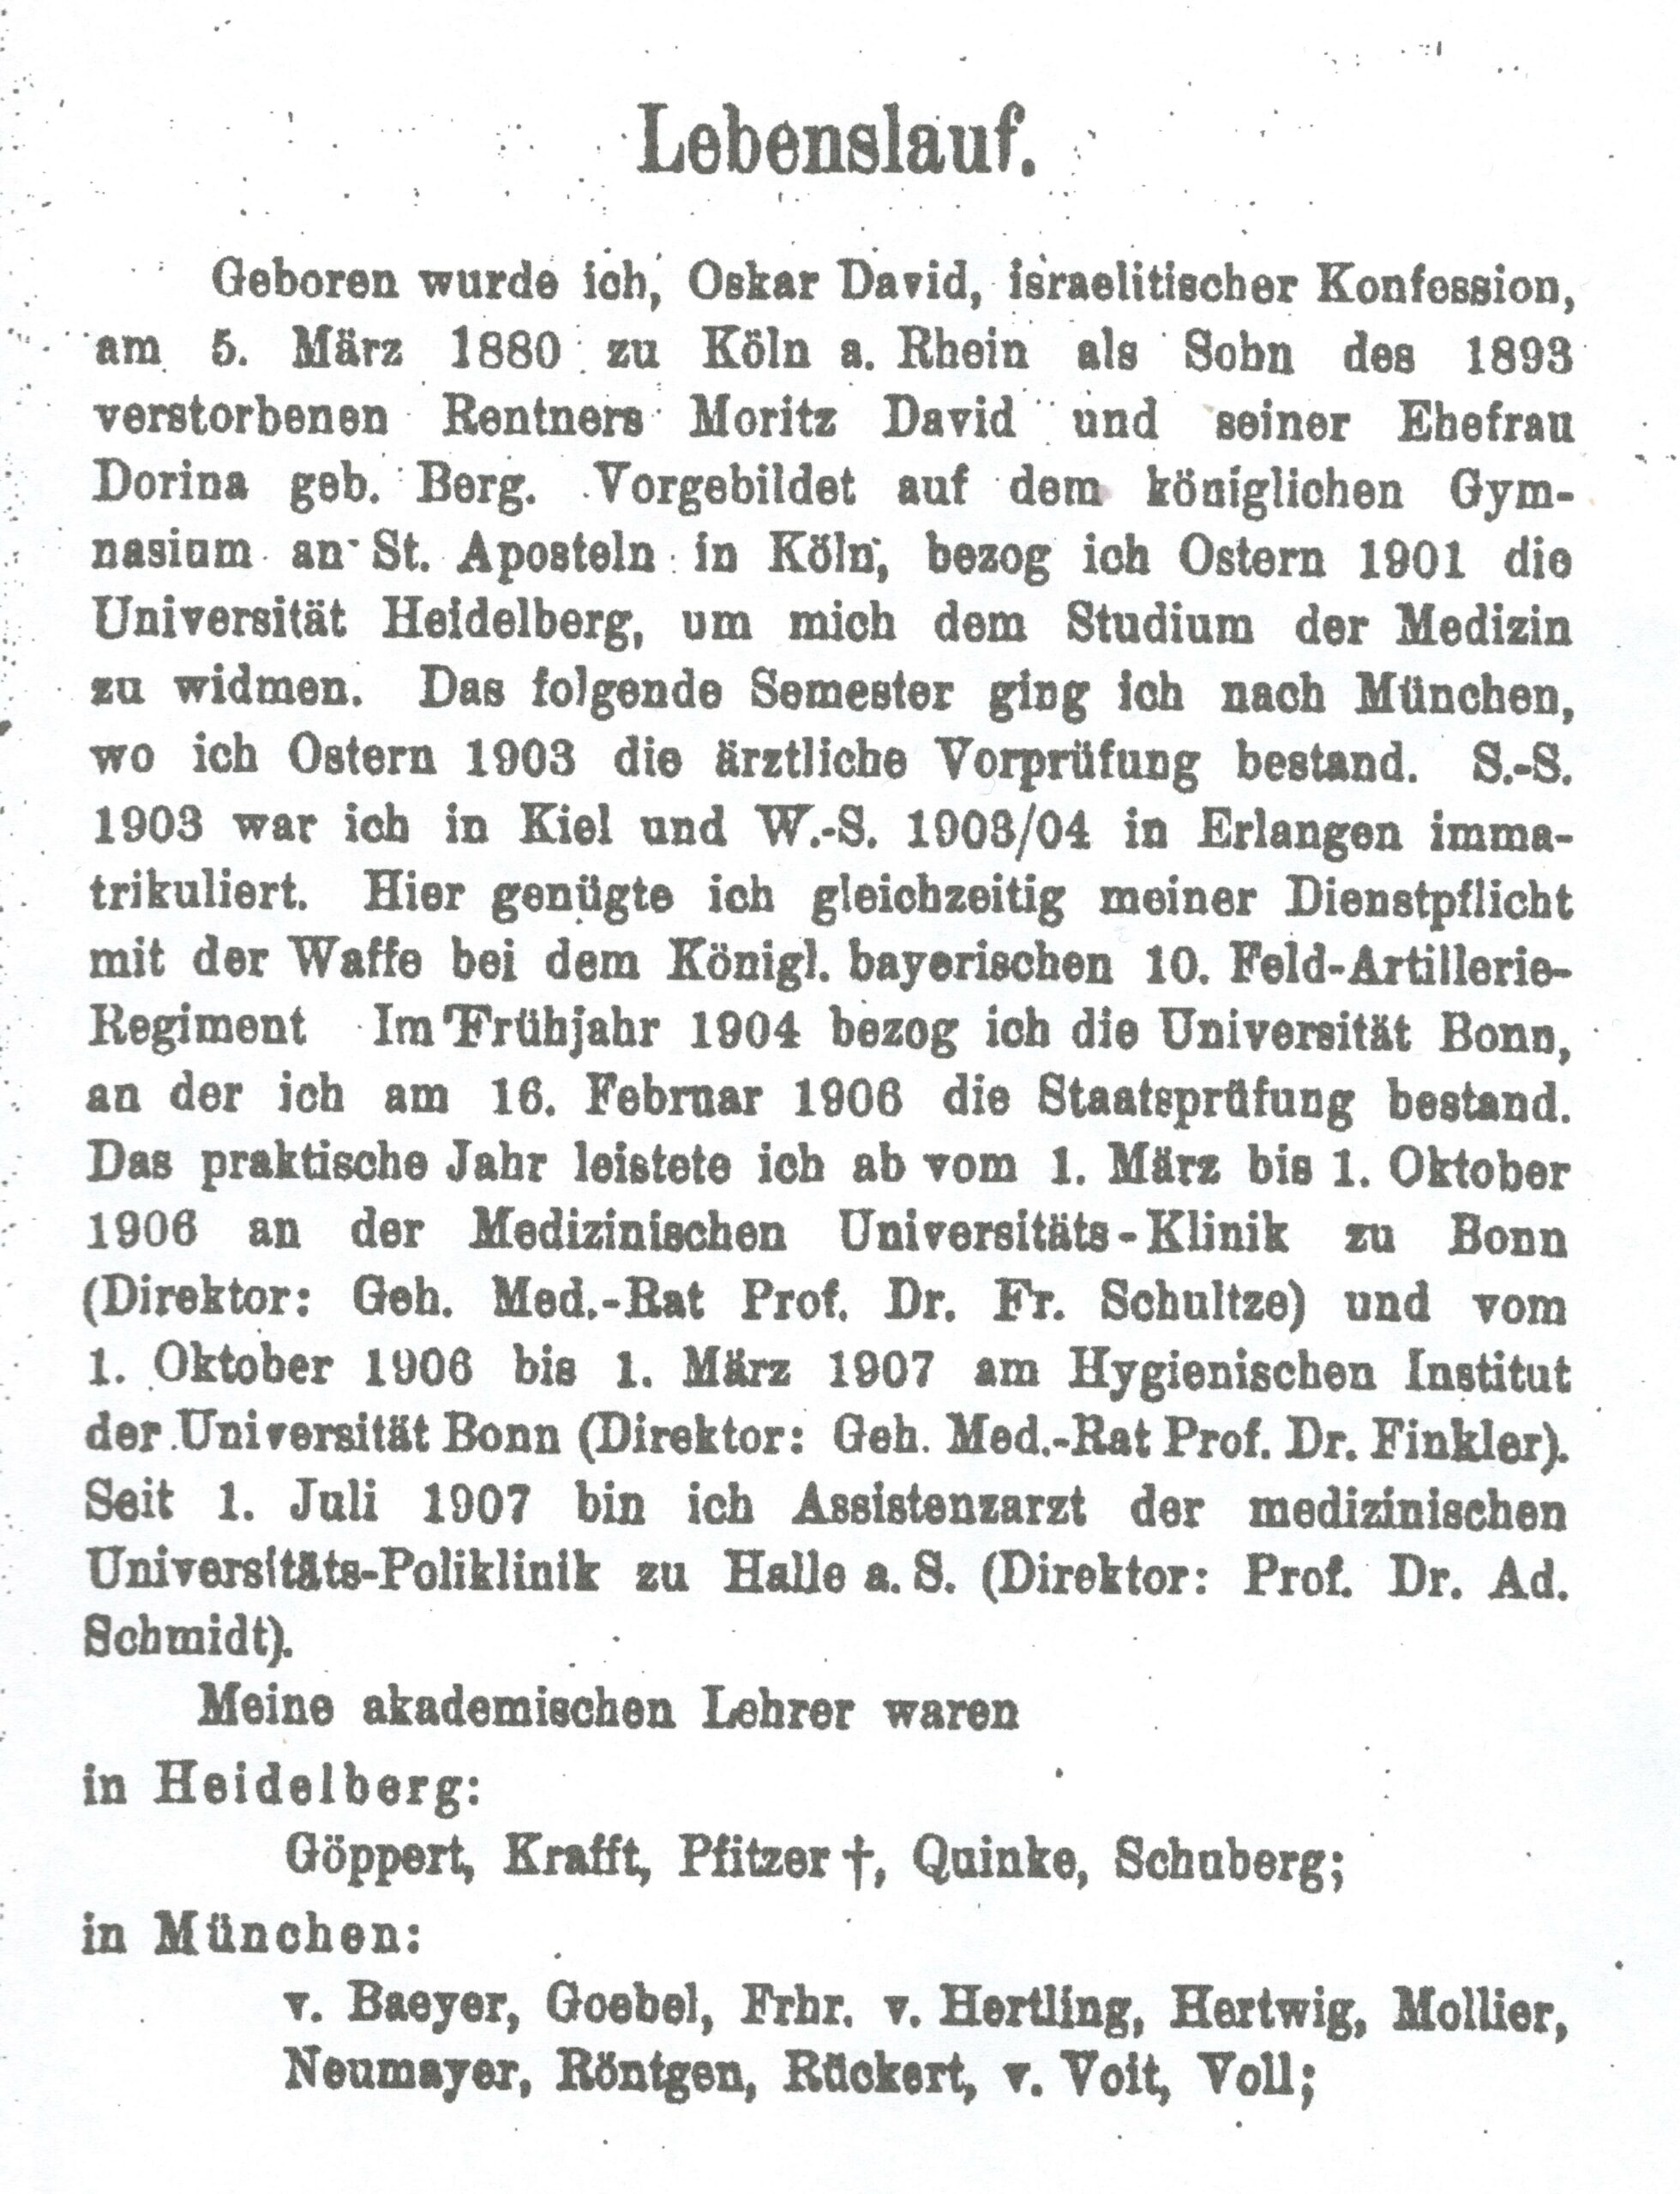 Lebenslauf, Dissertationsschrift 1908